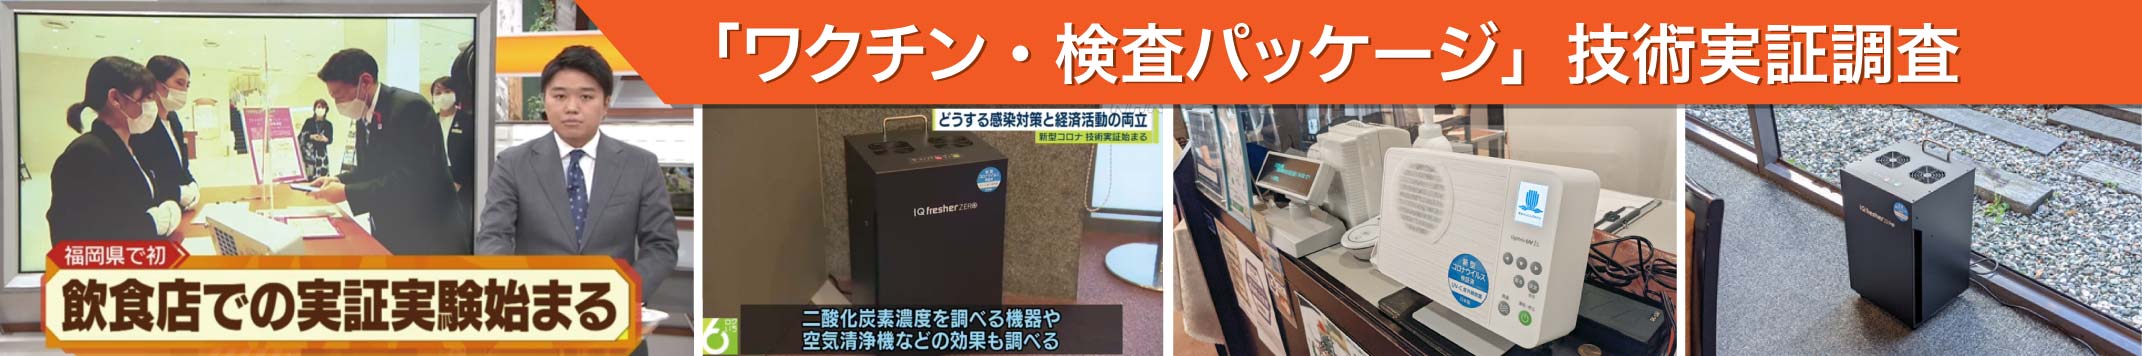 福岡の「ワクチン・検査パッケージ」技術実証実験にアイクォークの空気清浄機が使用されました。特集記事へ移動